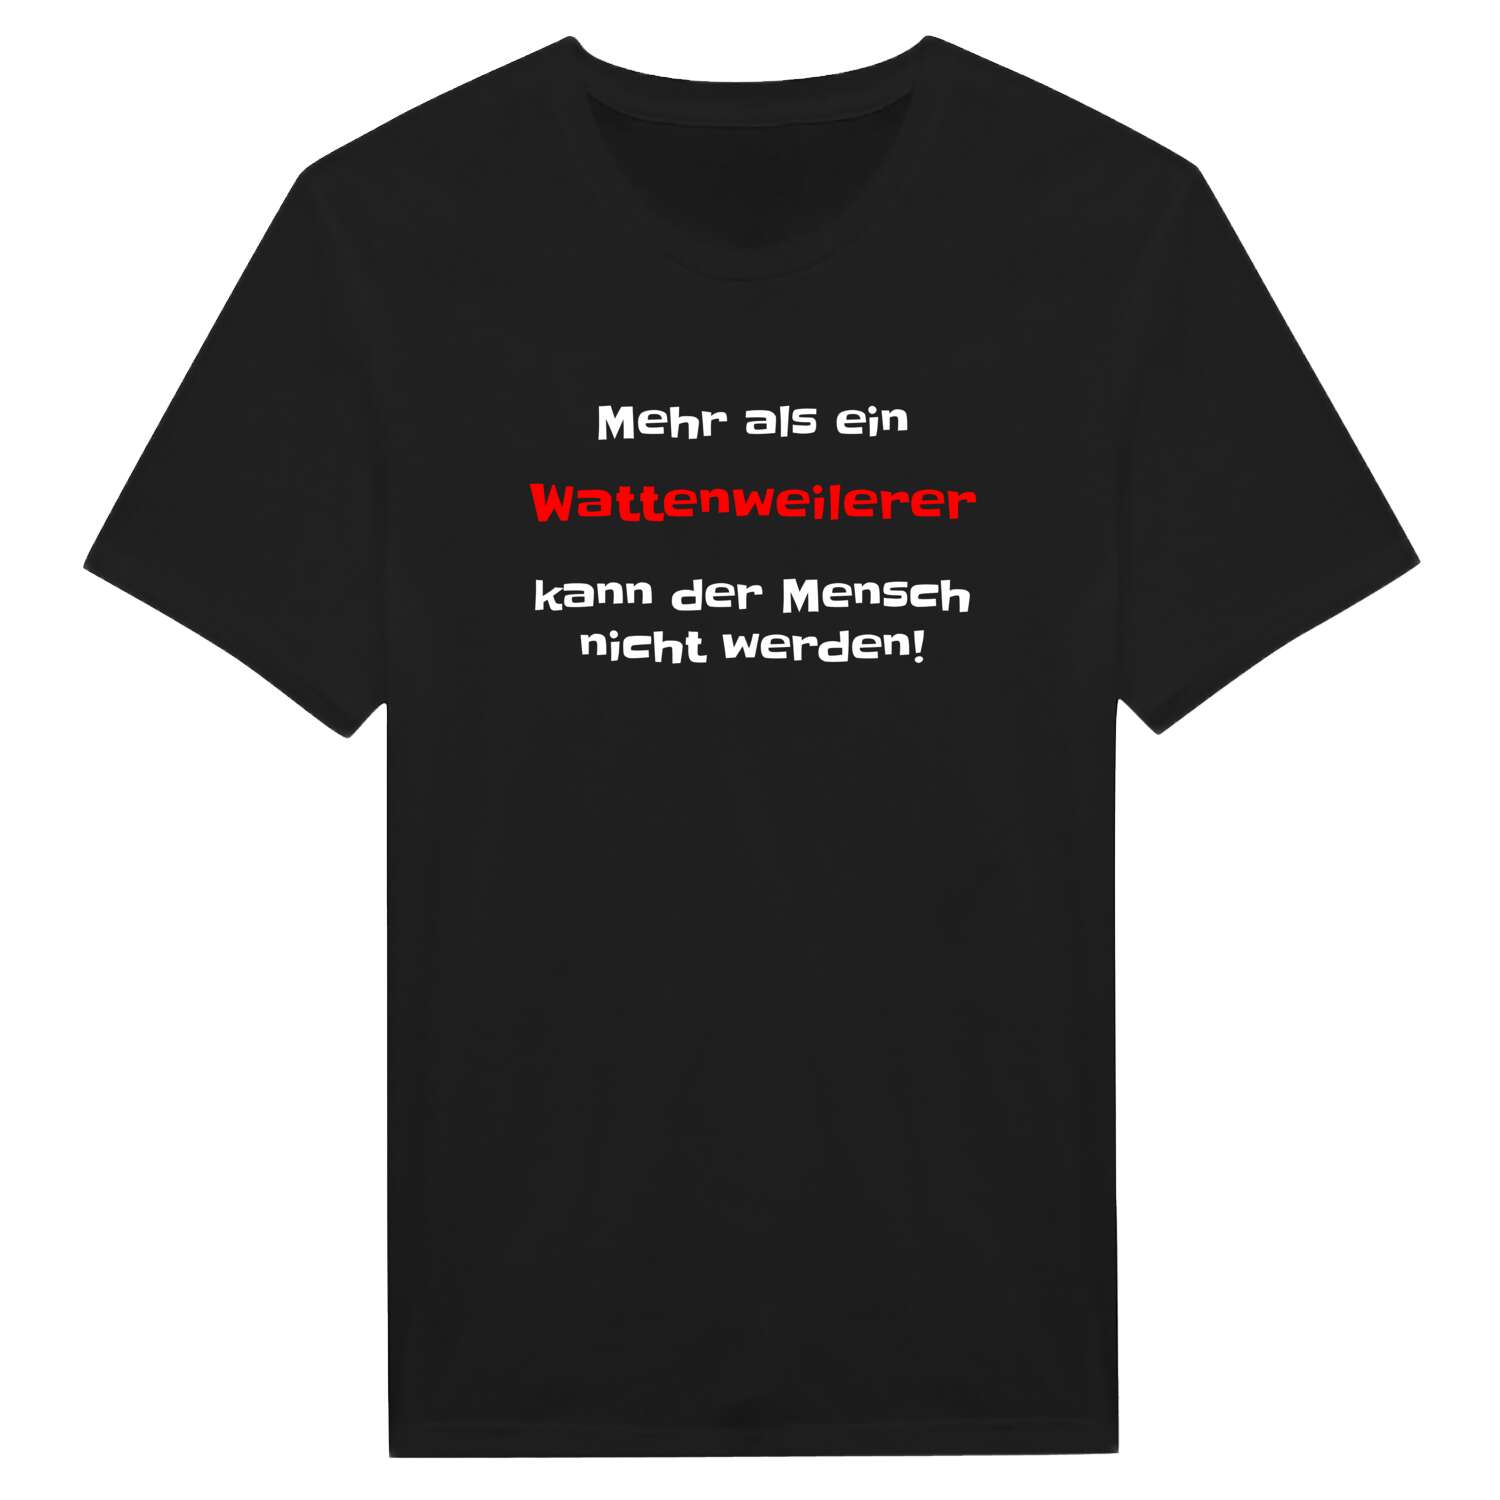 Wattenweiler T-Shirt »Mehr als ein«